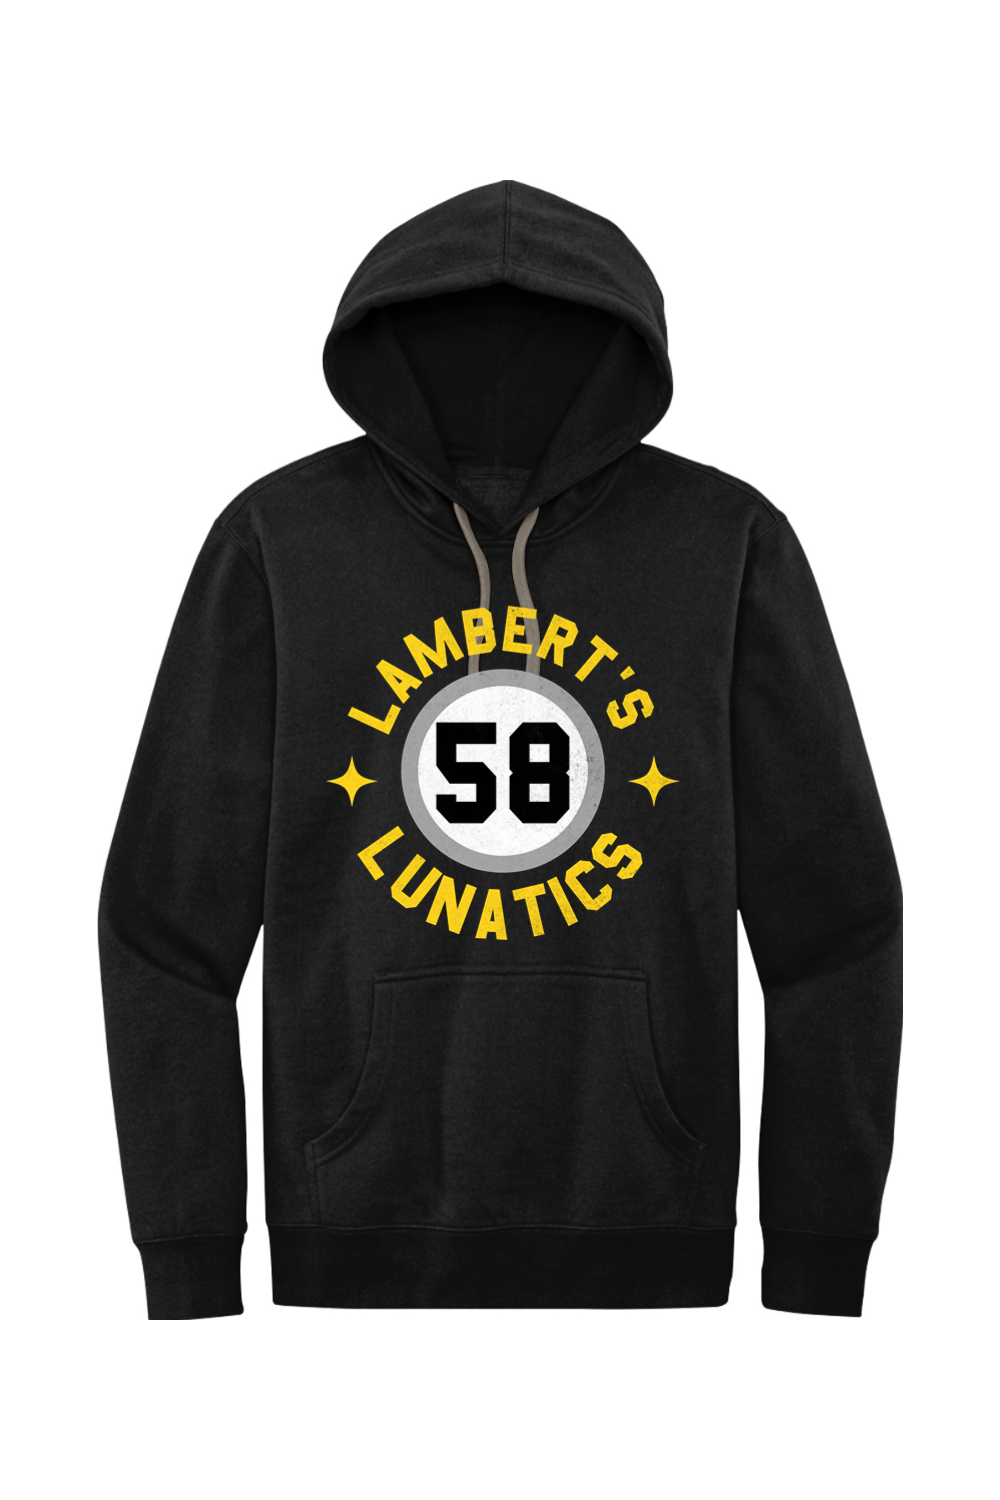 Lamberts Lunatics - Fleece Hoodie - Yinzylvania